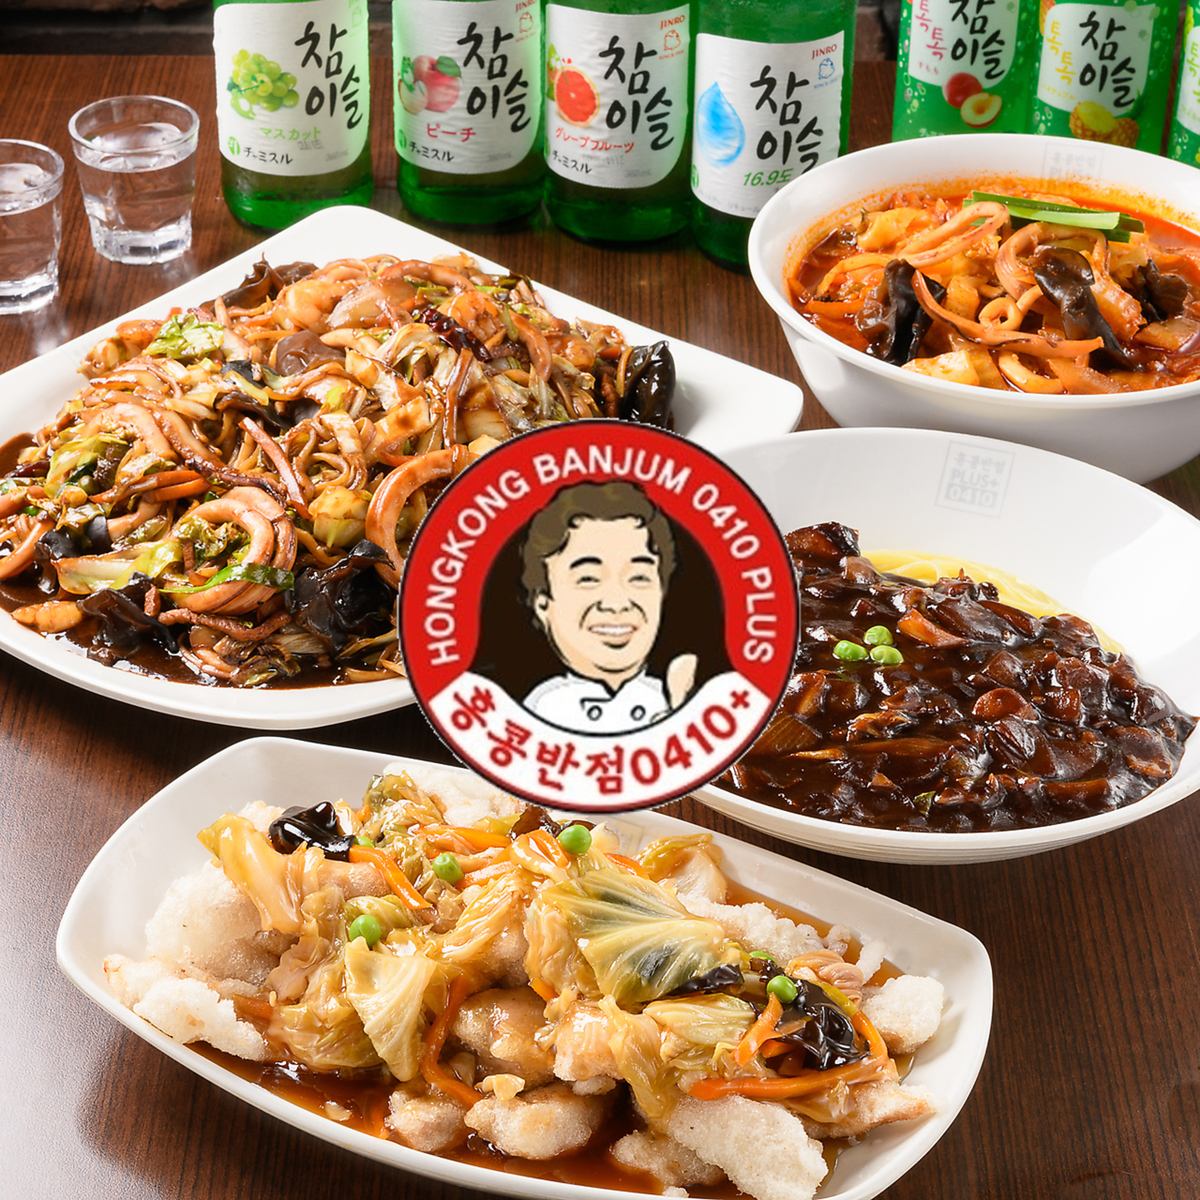 在难波可以以实惠的价格品尝到韩剧中常见的灵魂美食的人气韩国餐厅☆